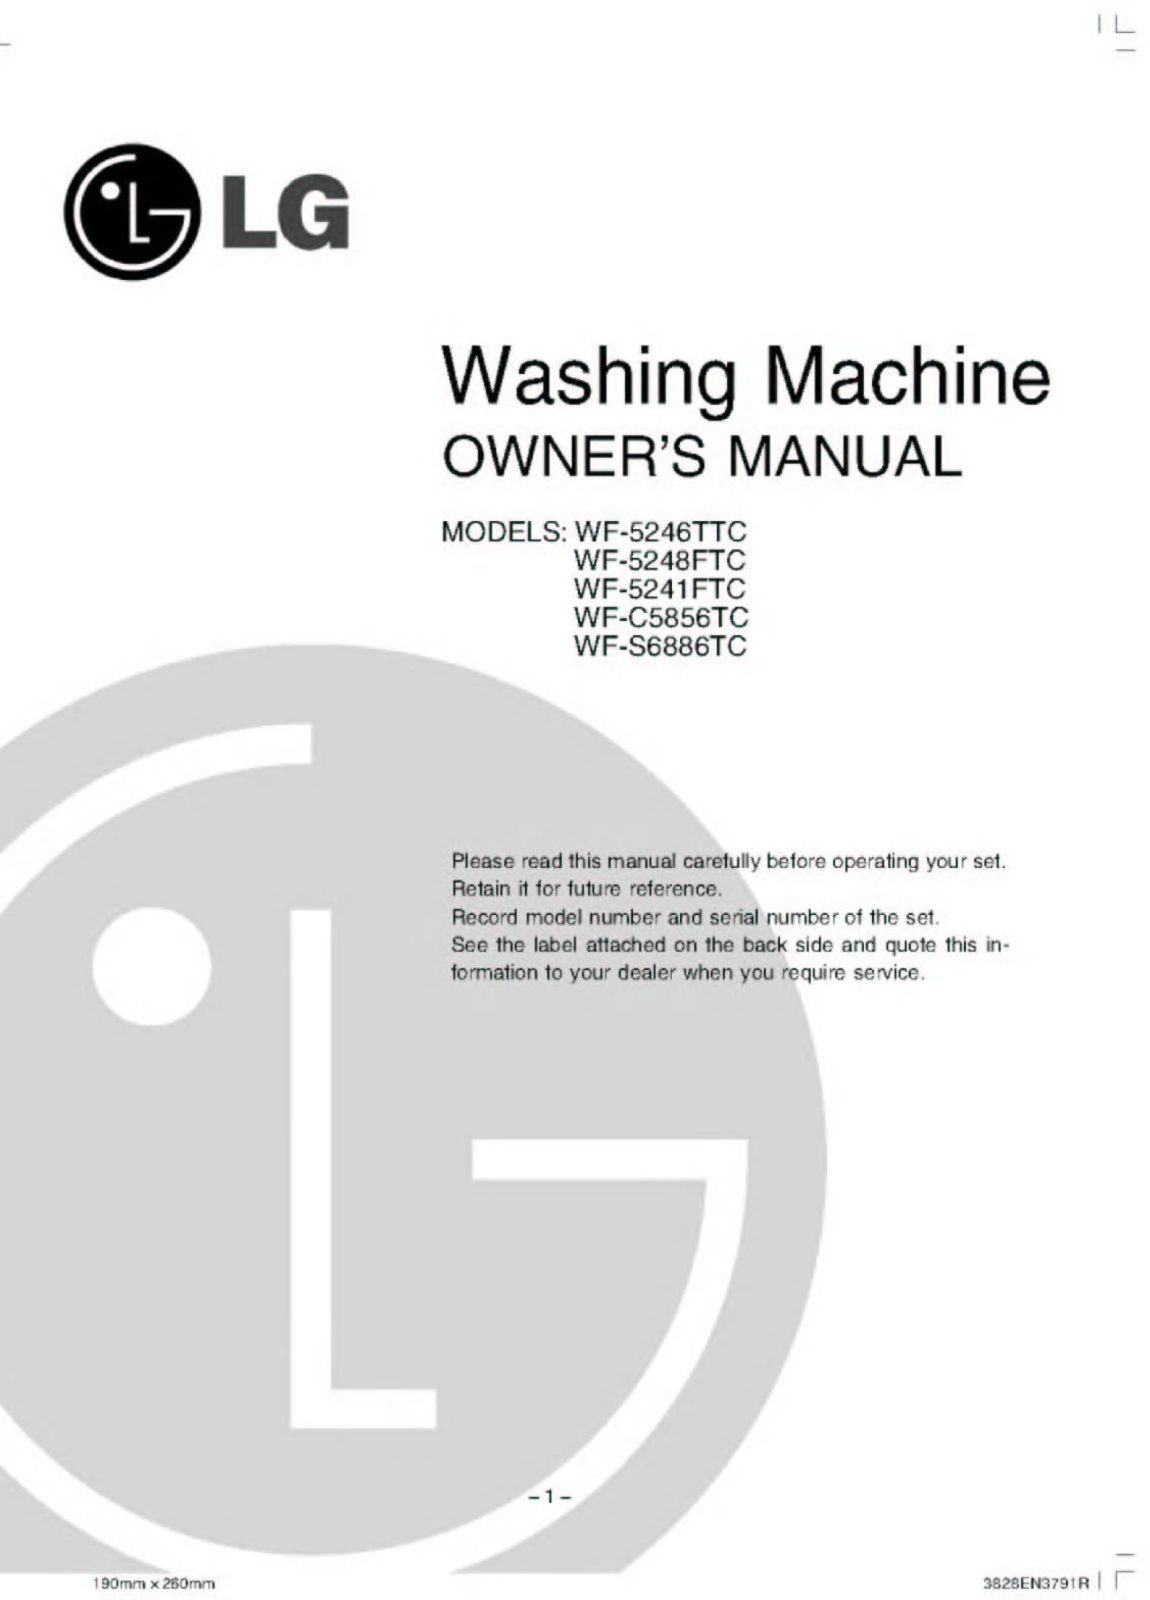 LG WF-5241FTC Owner’s Manual